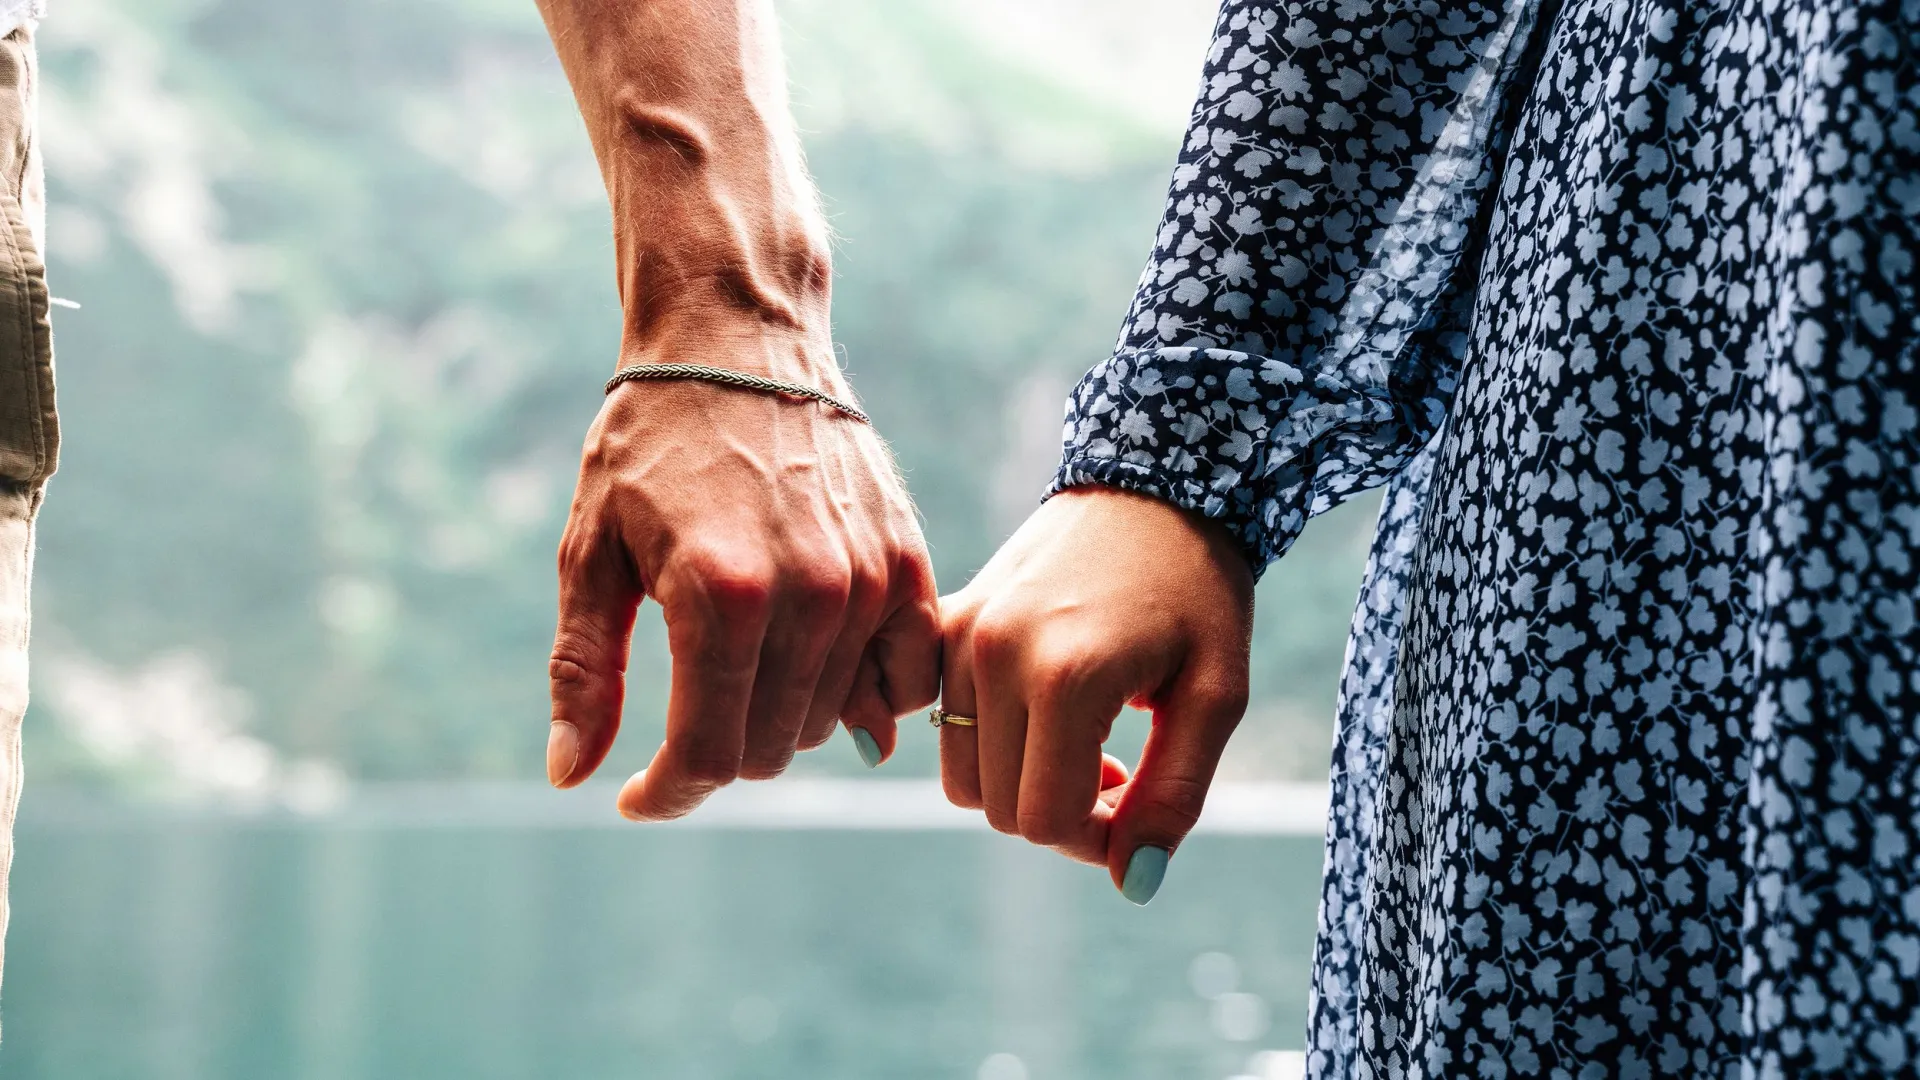 Супруги из ЯНАО рассказали о важности заботы друг о друге. Фото: MVelishchuk/Shutterstock/Fotodom